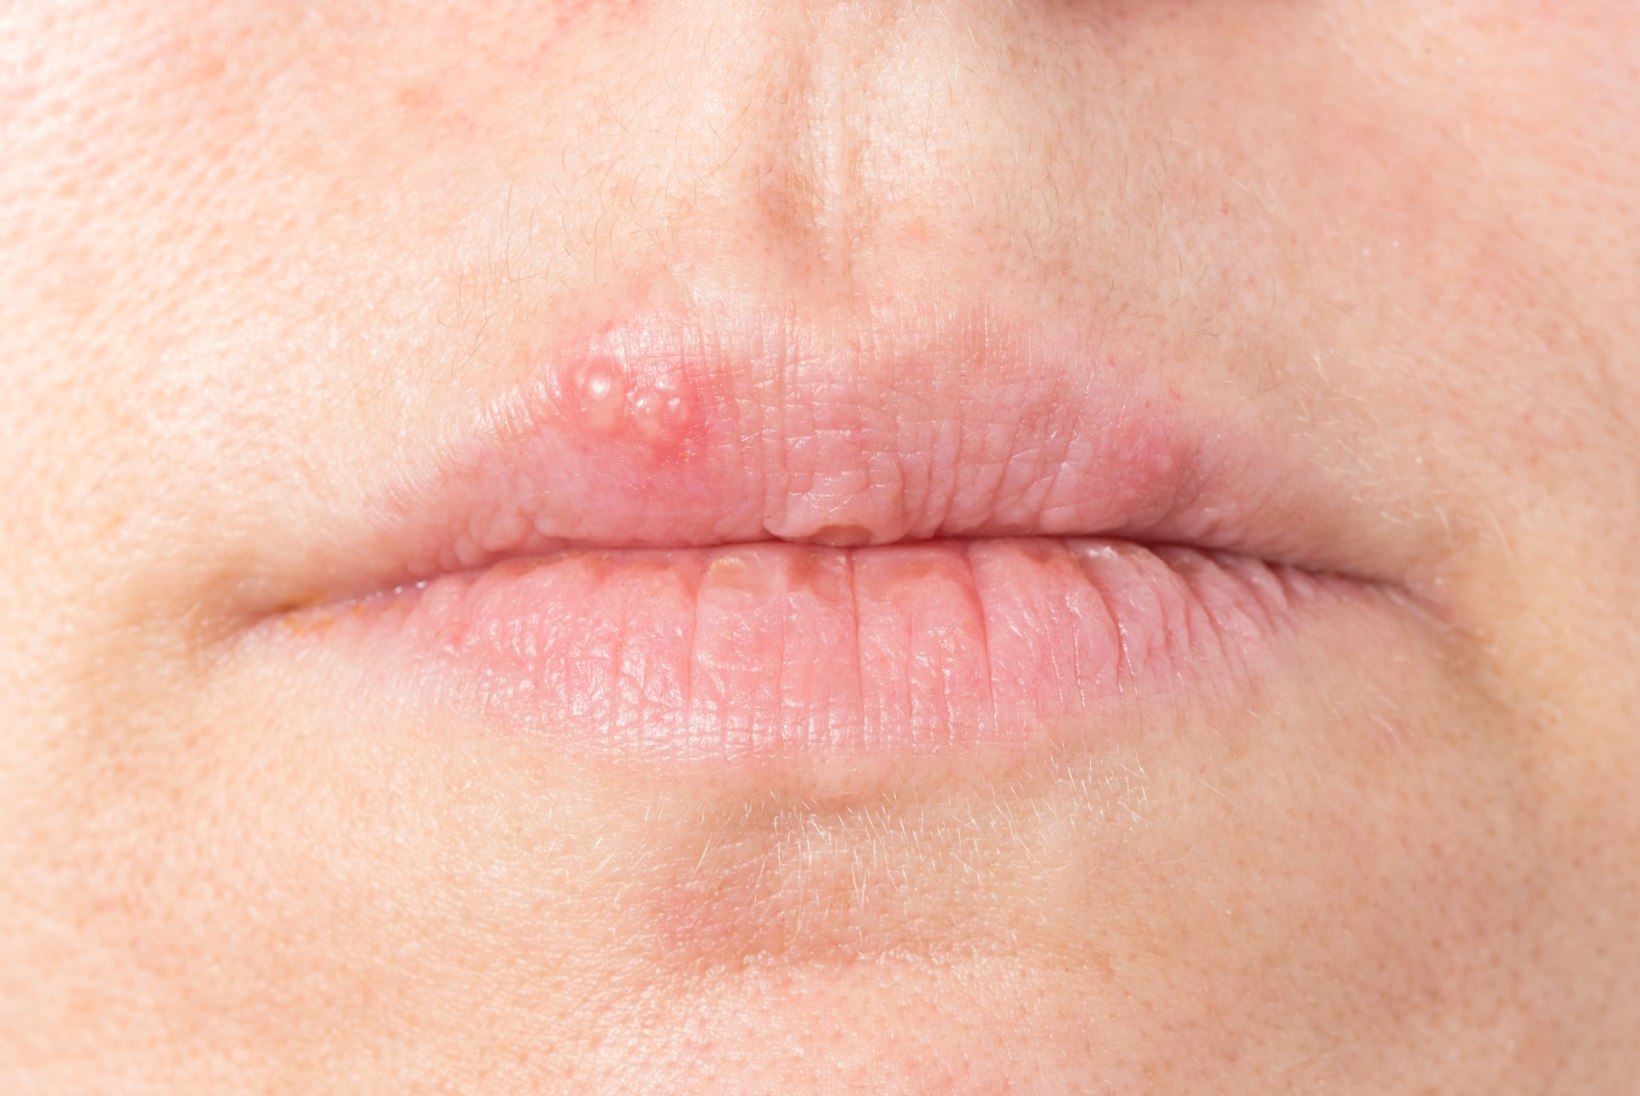 Külmad ilmad toovad valusa ohatise huulele – kuidas seda ennetada ja vältida?